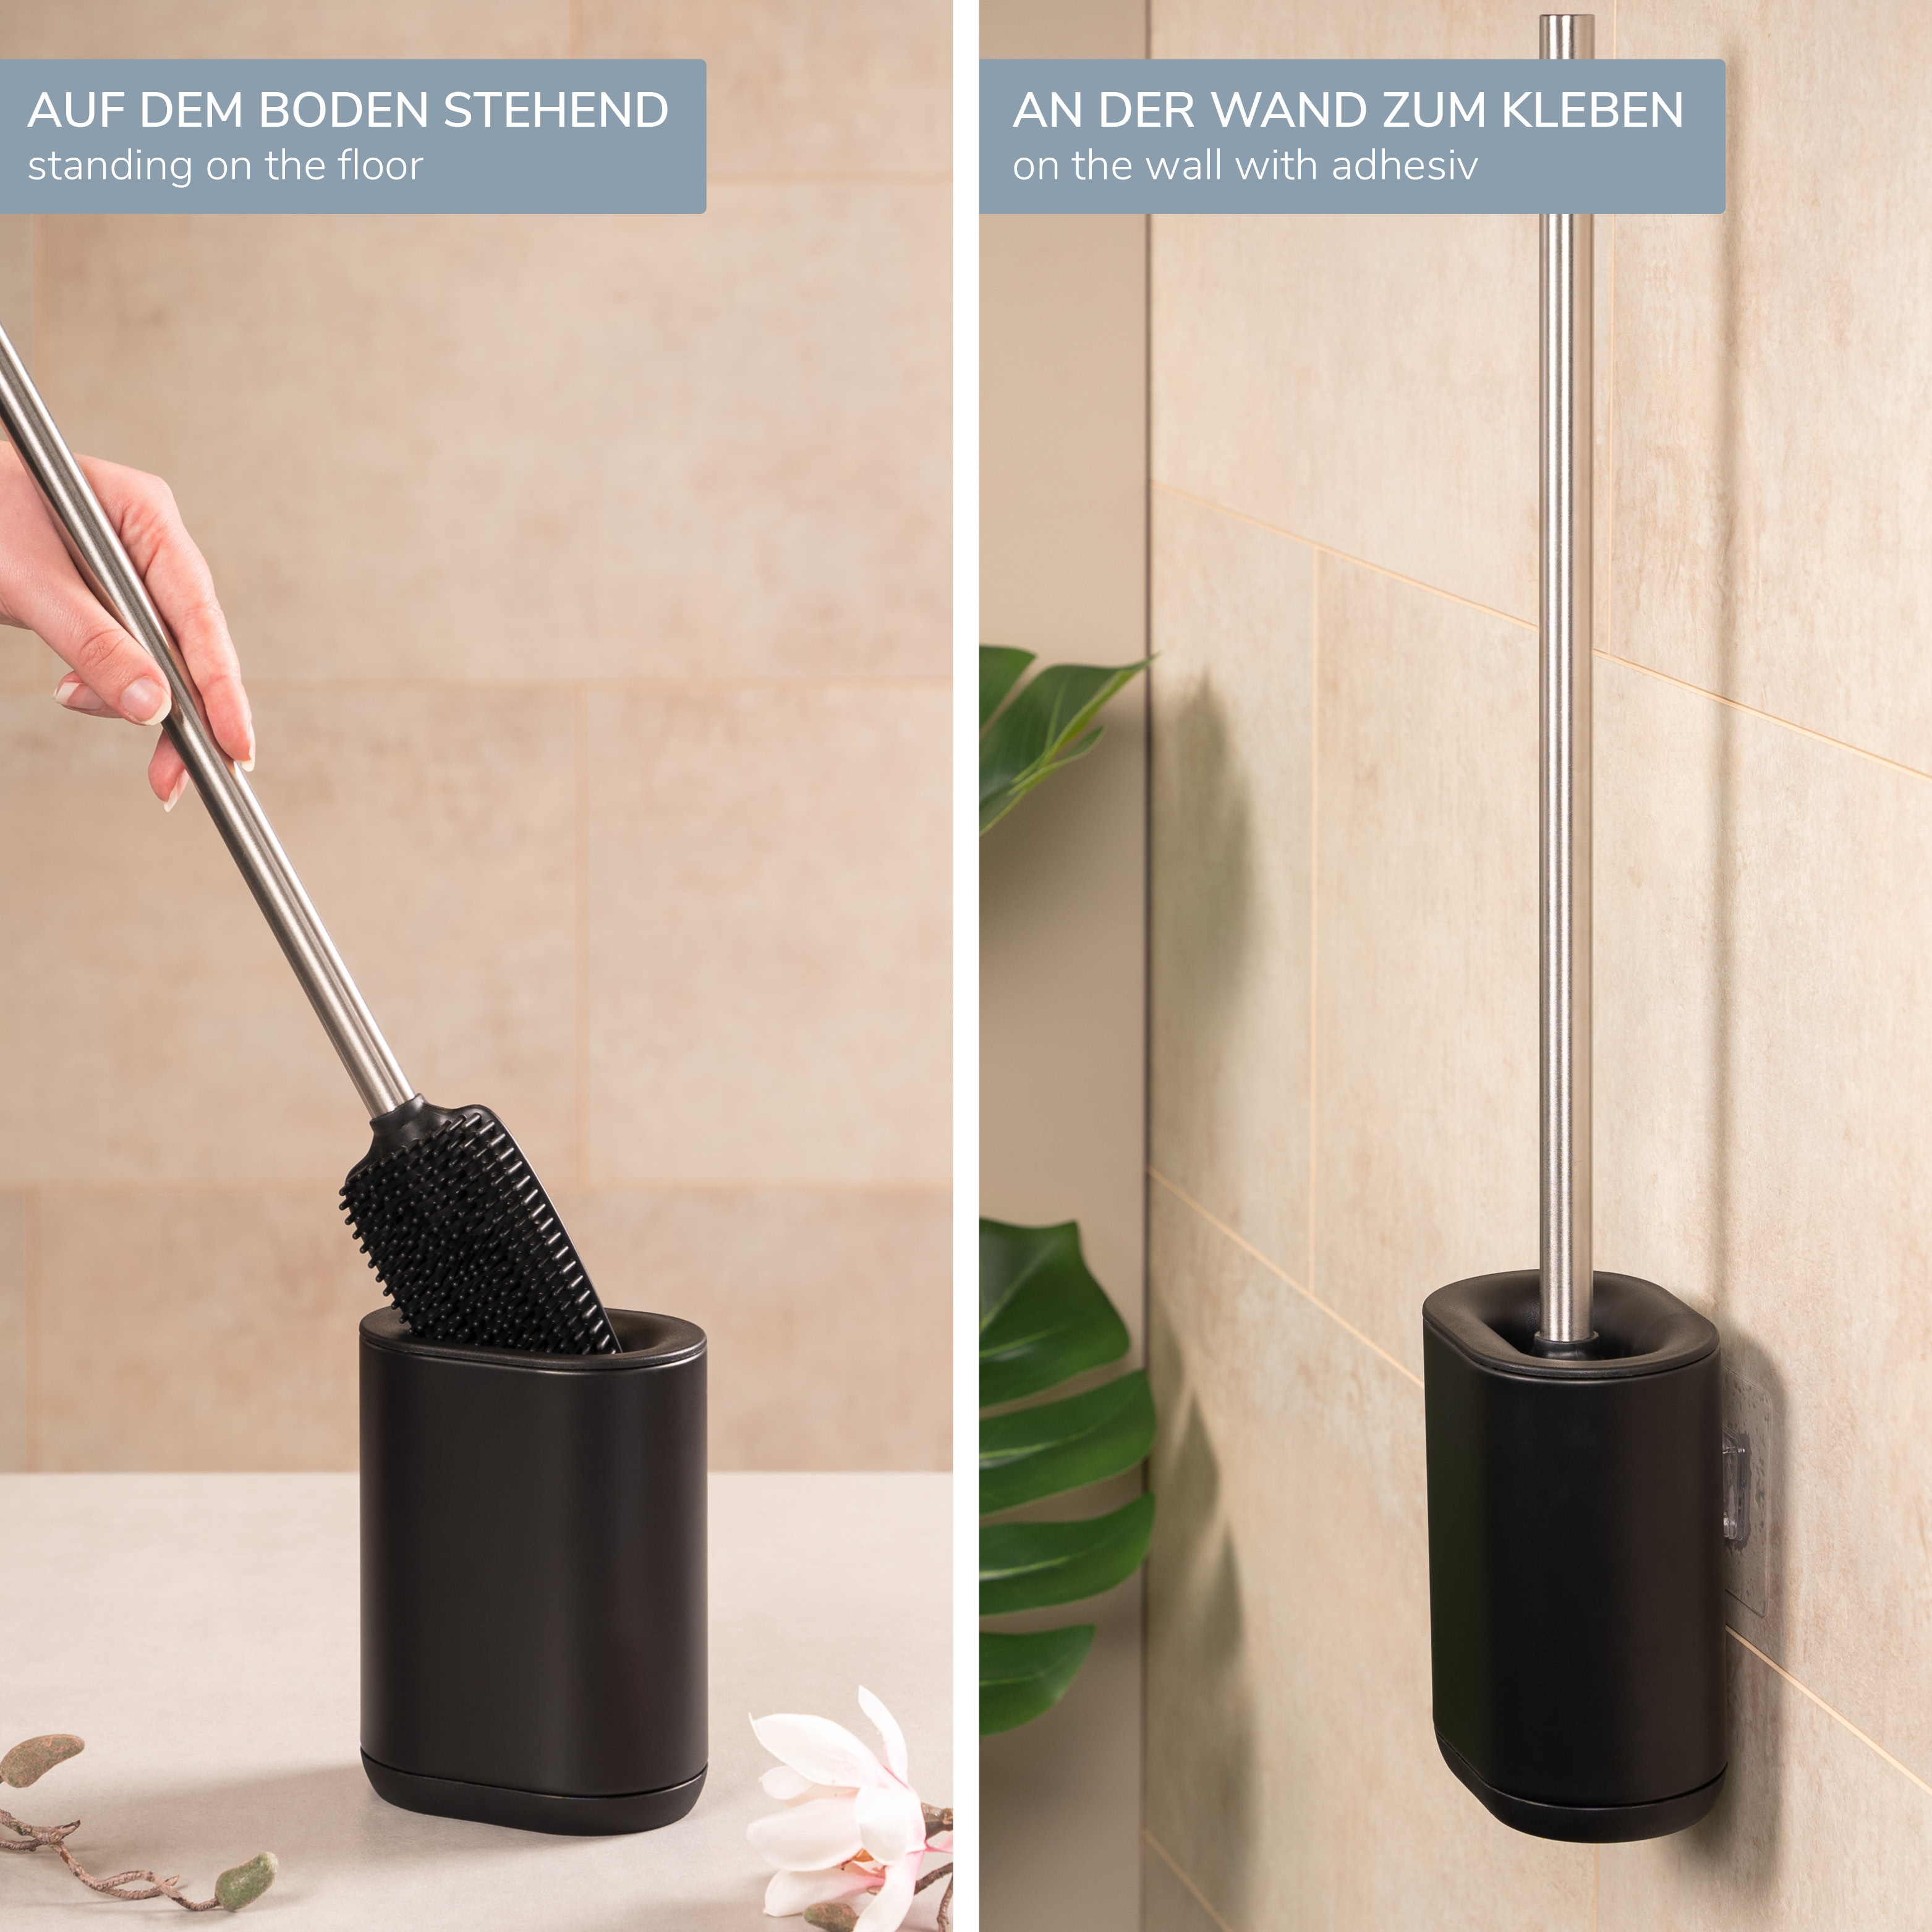 WC-Garnitur BARBENA, schwarz, mit flexibler 3in1 Bürste aus elastischem TPR-Material mit Wandhalterung // WC-Bürste Edelstahlgriff 